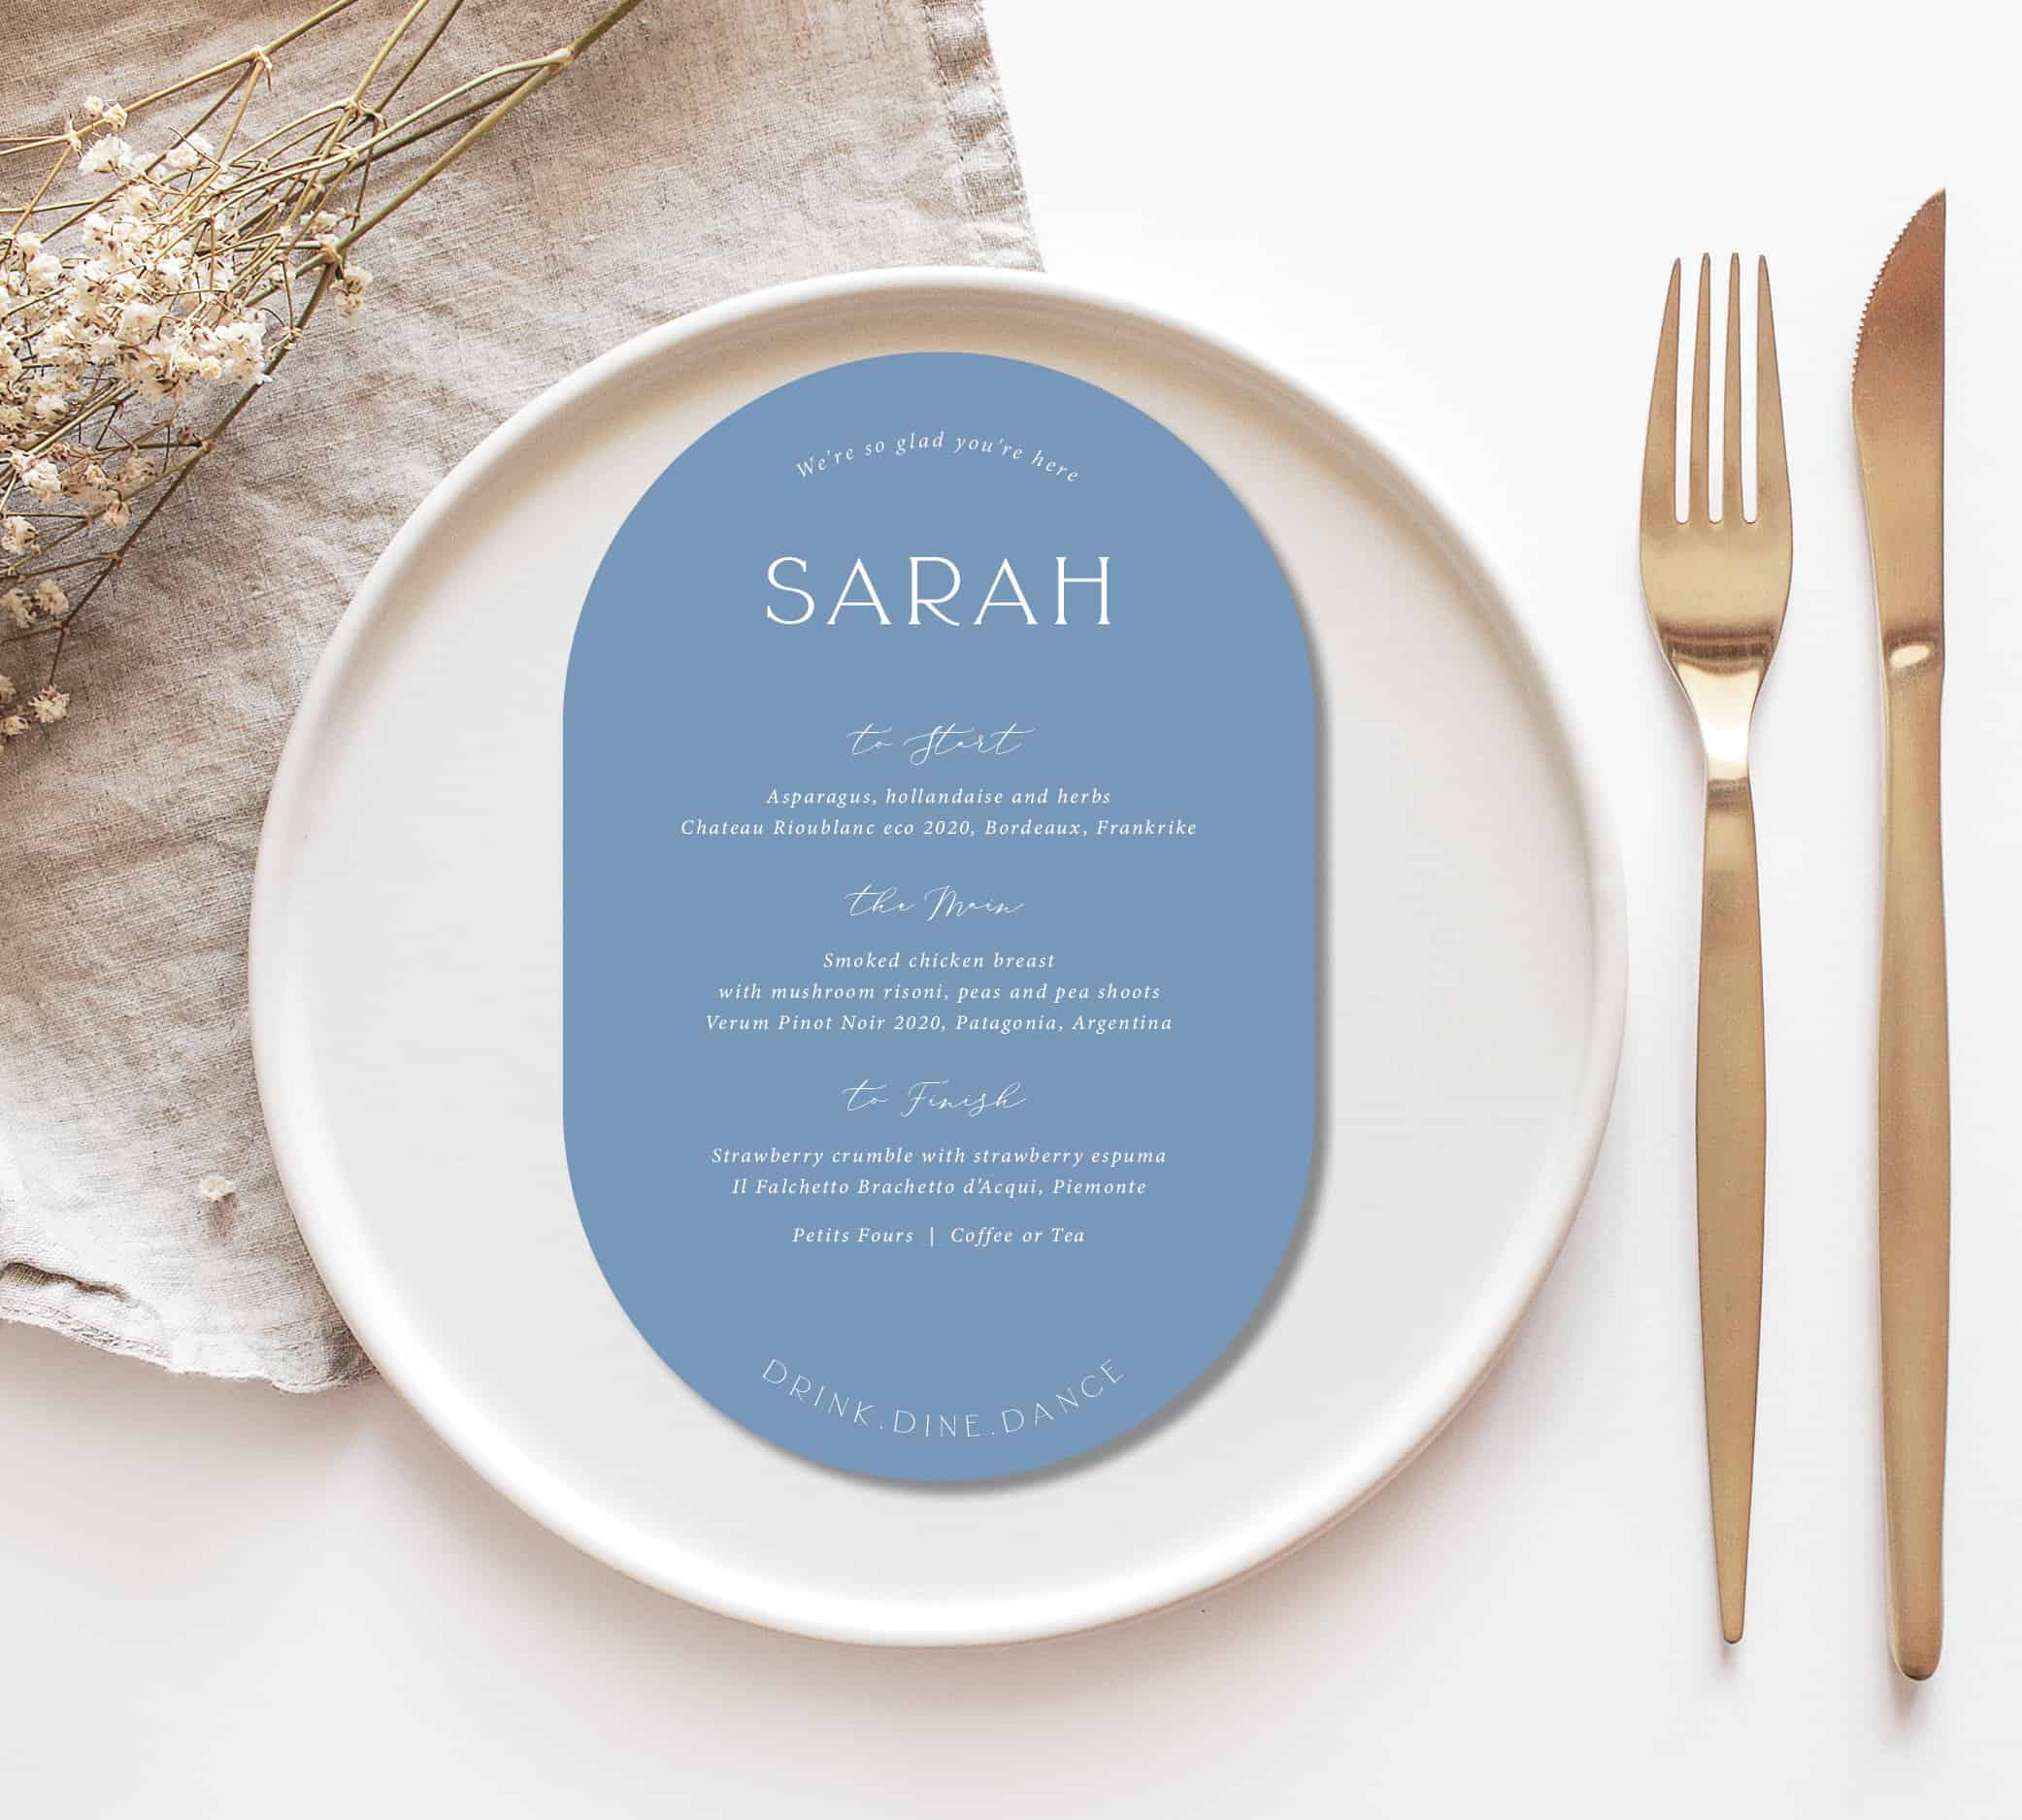 personalised wedding menus